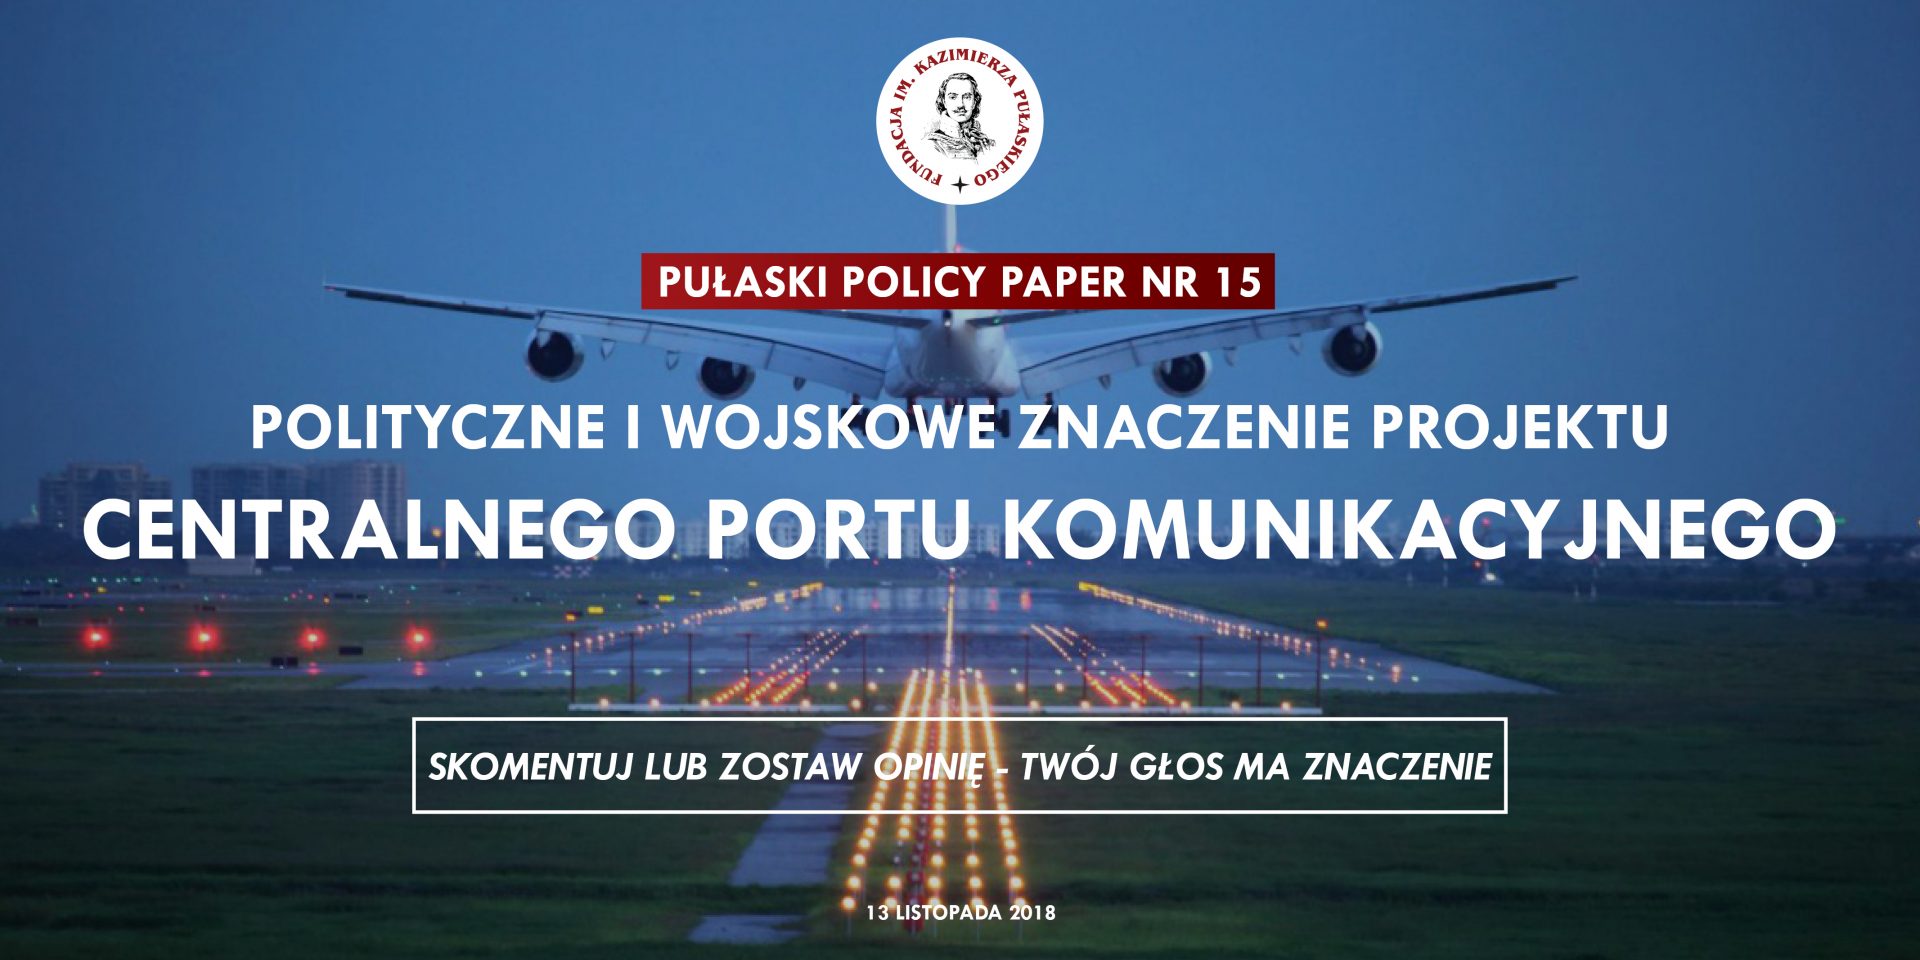 PULASKI POLICY PAPER – T. Smura: Polityczne i wojskowe znaczenie projektu Centralnego Portu Komunikacyjnego